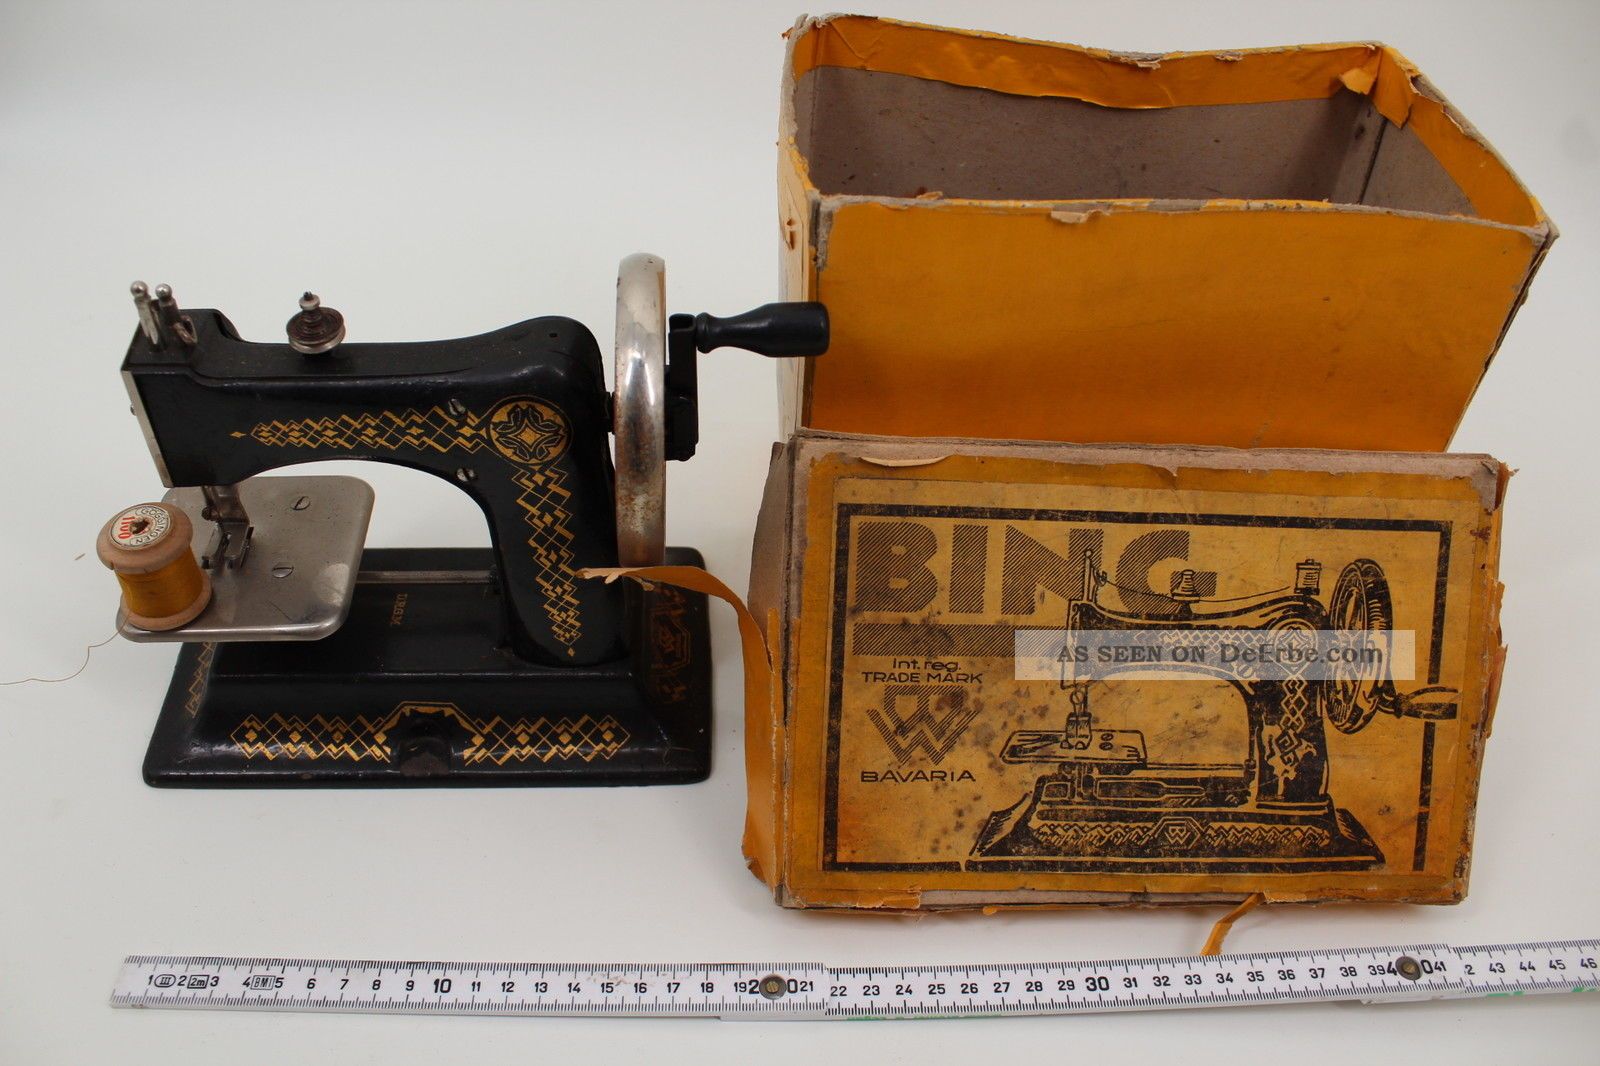 Bing Spielzeug Nähmaschine Eiserne Mamsell & Karton 1930 Gbn Antikspielzeug Bild